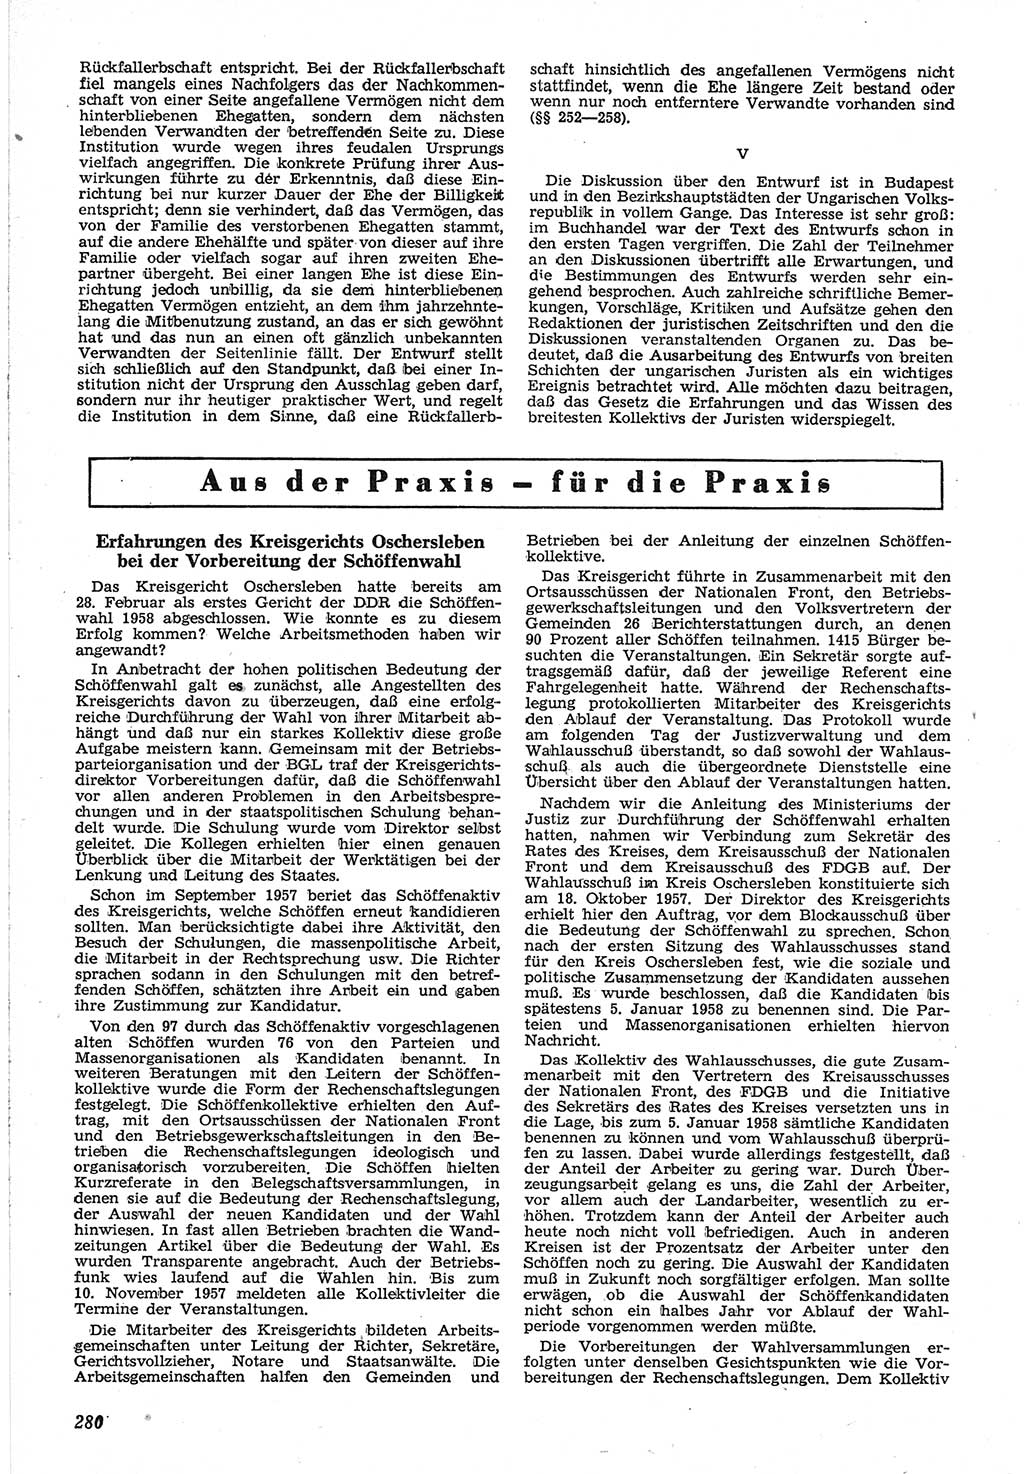 Neue Justiz (NJ), Zeitschrift für Recht und Rechtswissenschaft [Deutsche Demokratische Republik (DDR)], 12. Jahrgang 1958, Seite 280 (NJ DDR 1958, S. 280)